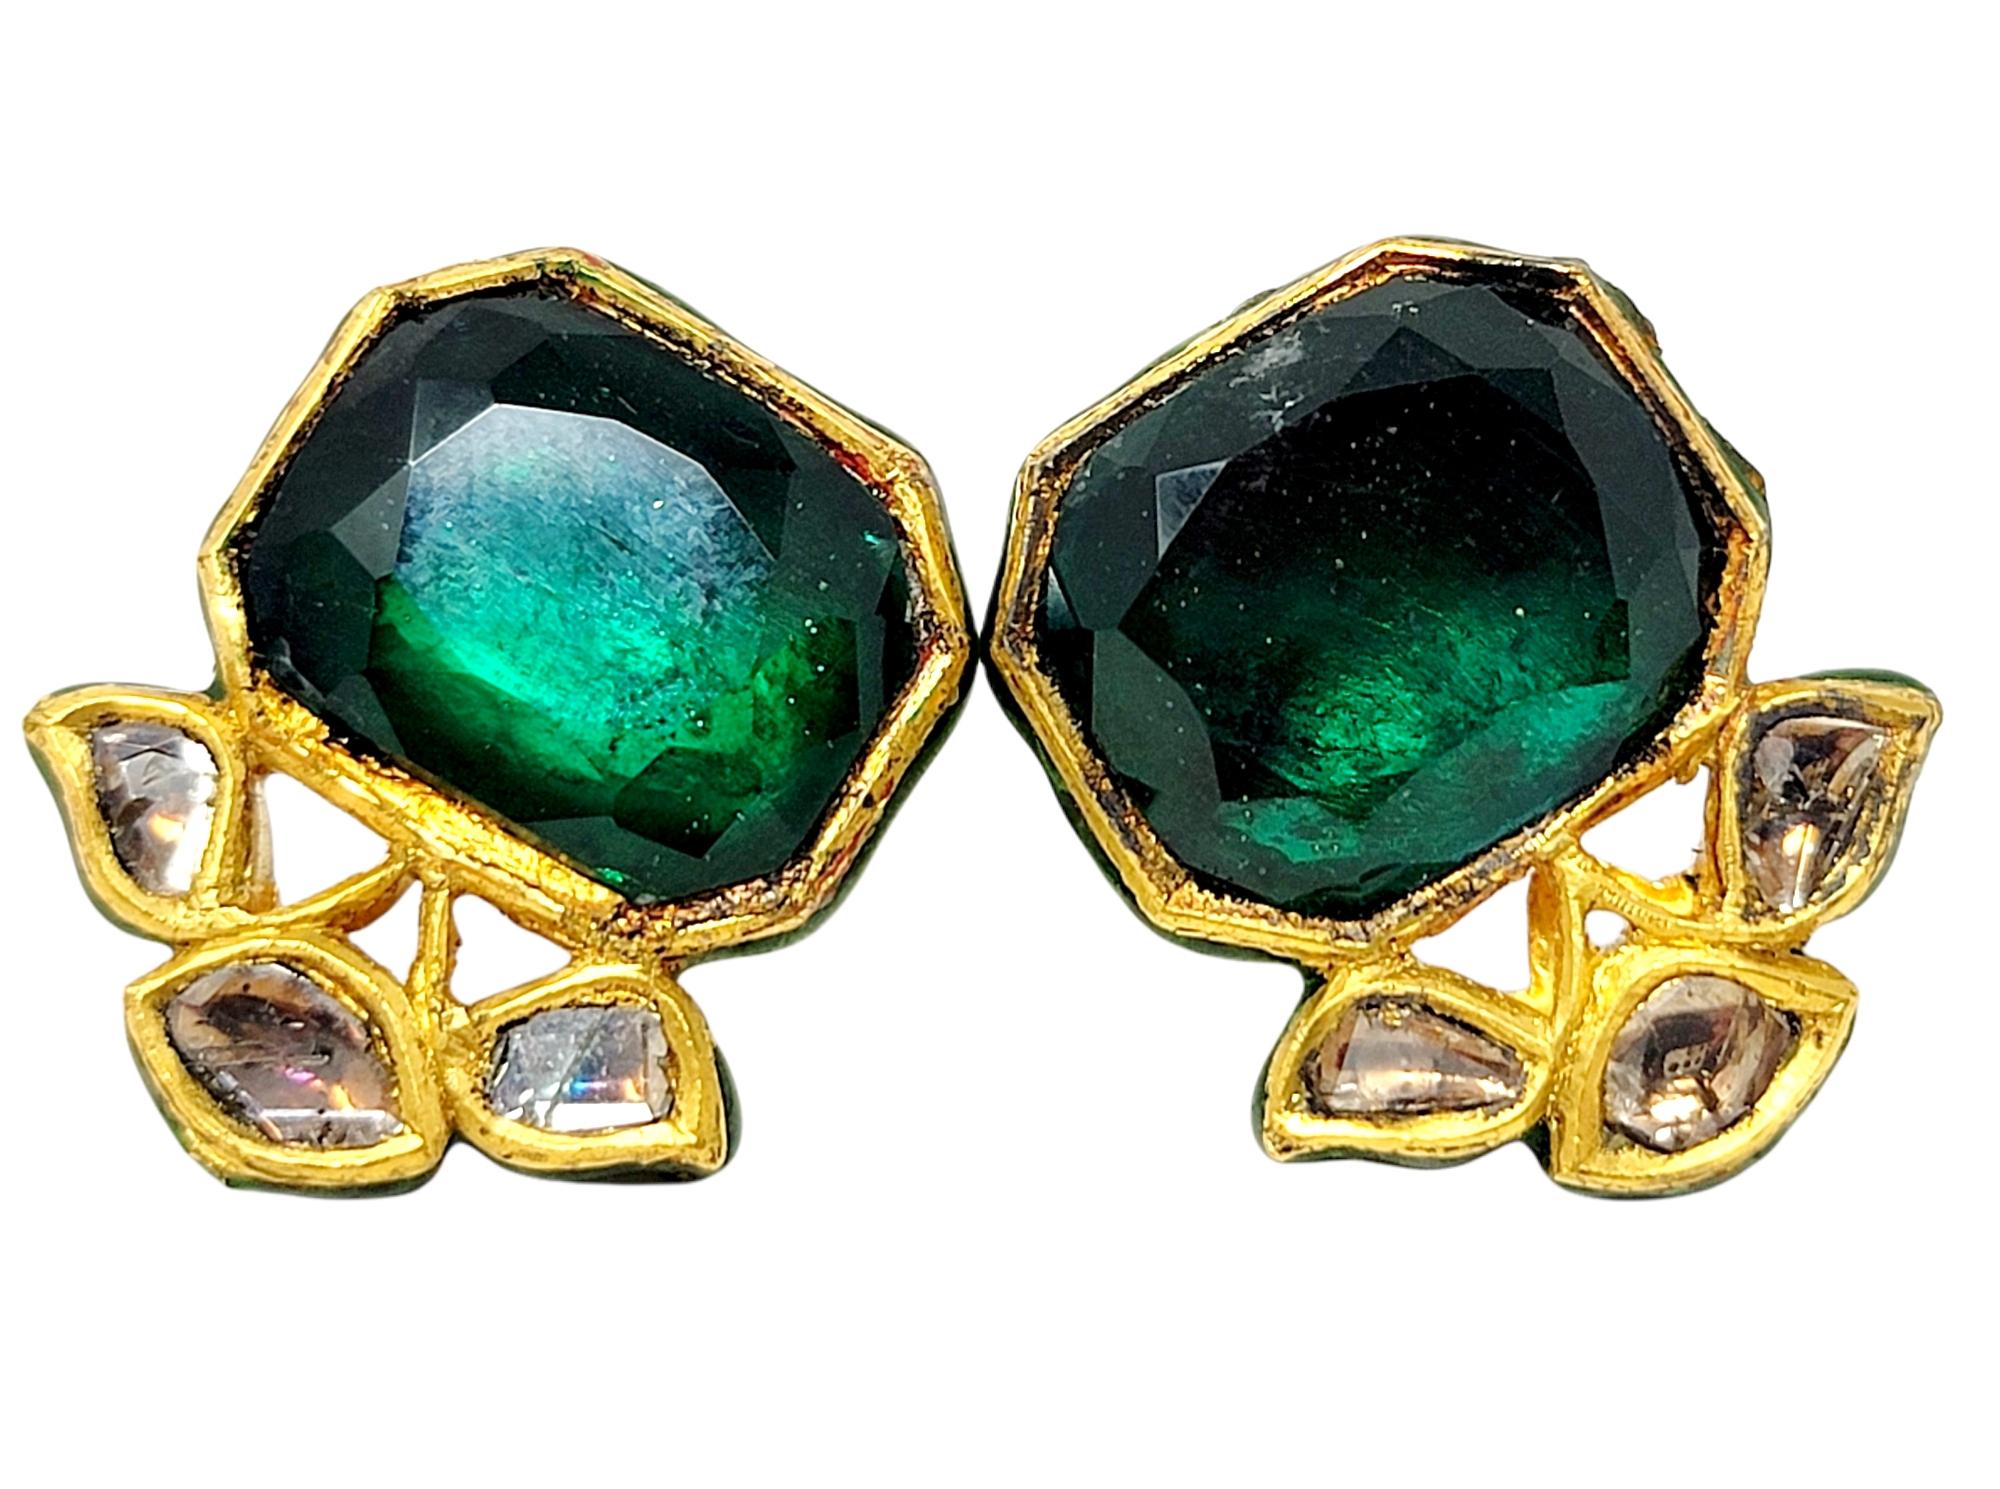 Diese wunderschönen, einmaligen Ohrringe sind einfach wunderschön. Die kräftige Farbe der sattgrünen Glassteine ist ein echter Hingucker, während die natürlichen, ungeschliffenen Diamanten einen zusätzlichen Hauch von Glanz und Glamour verleihen.